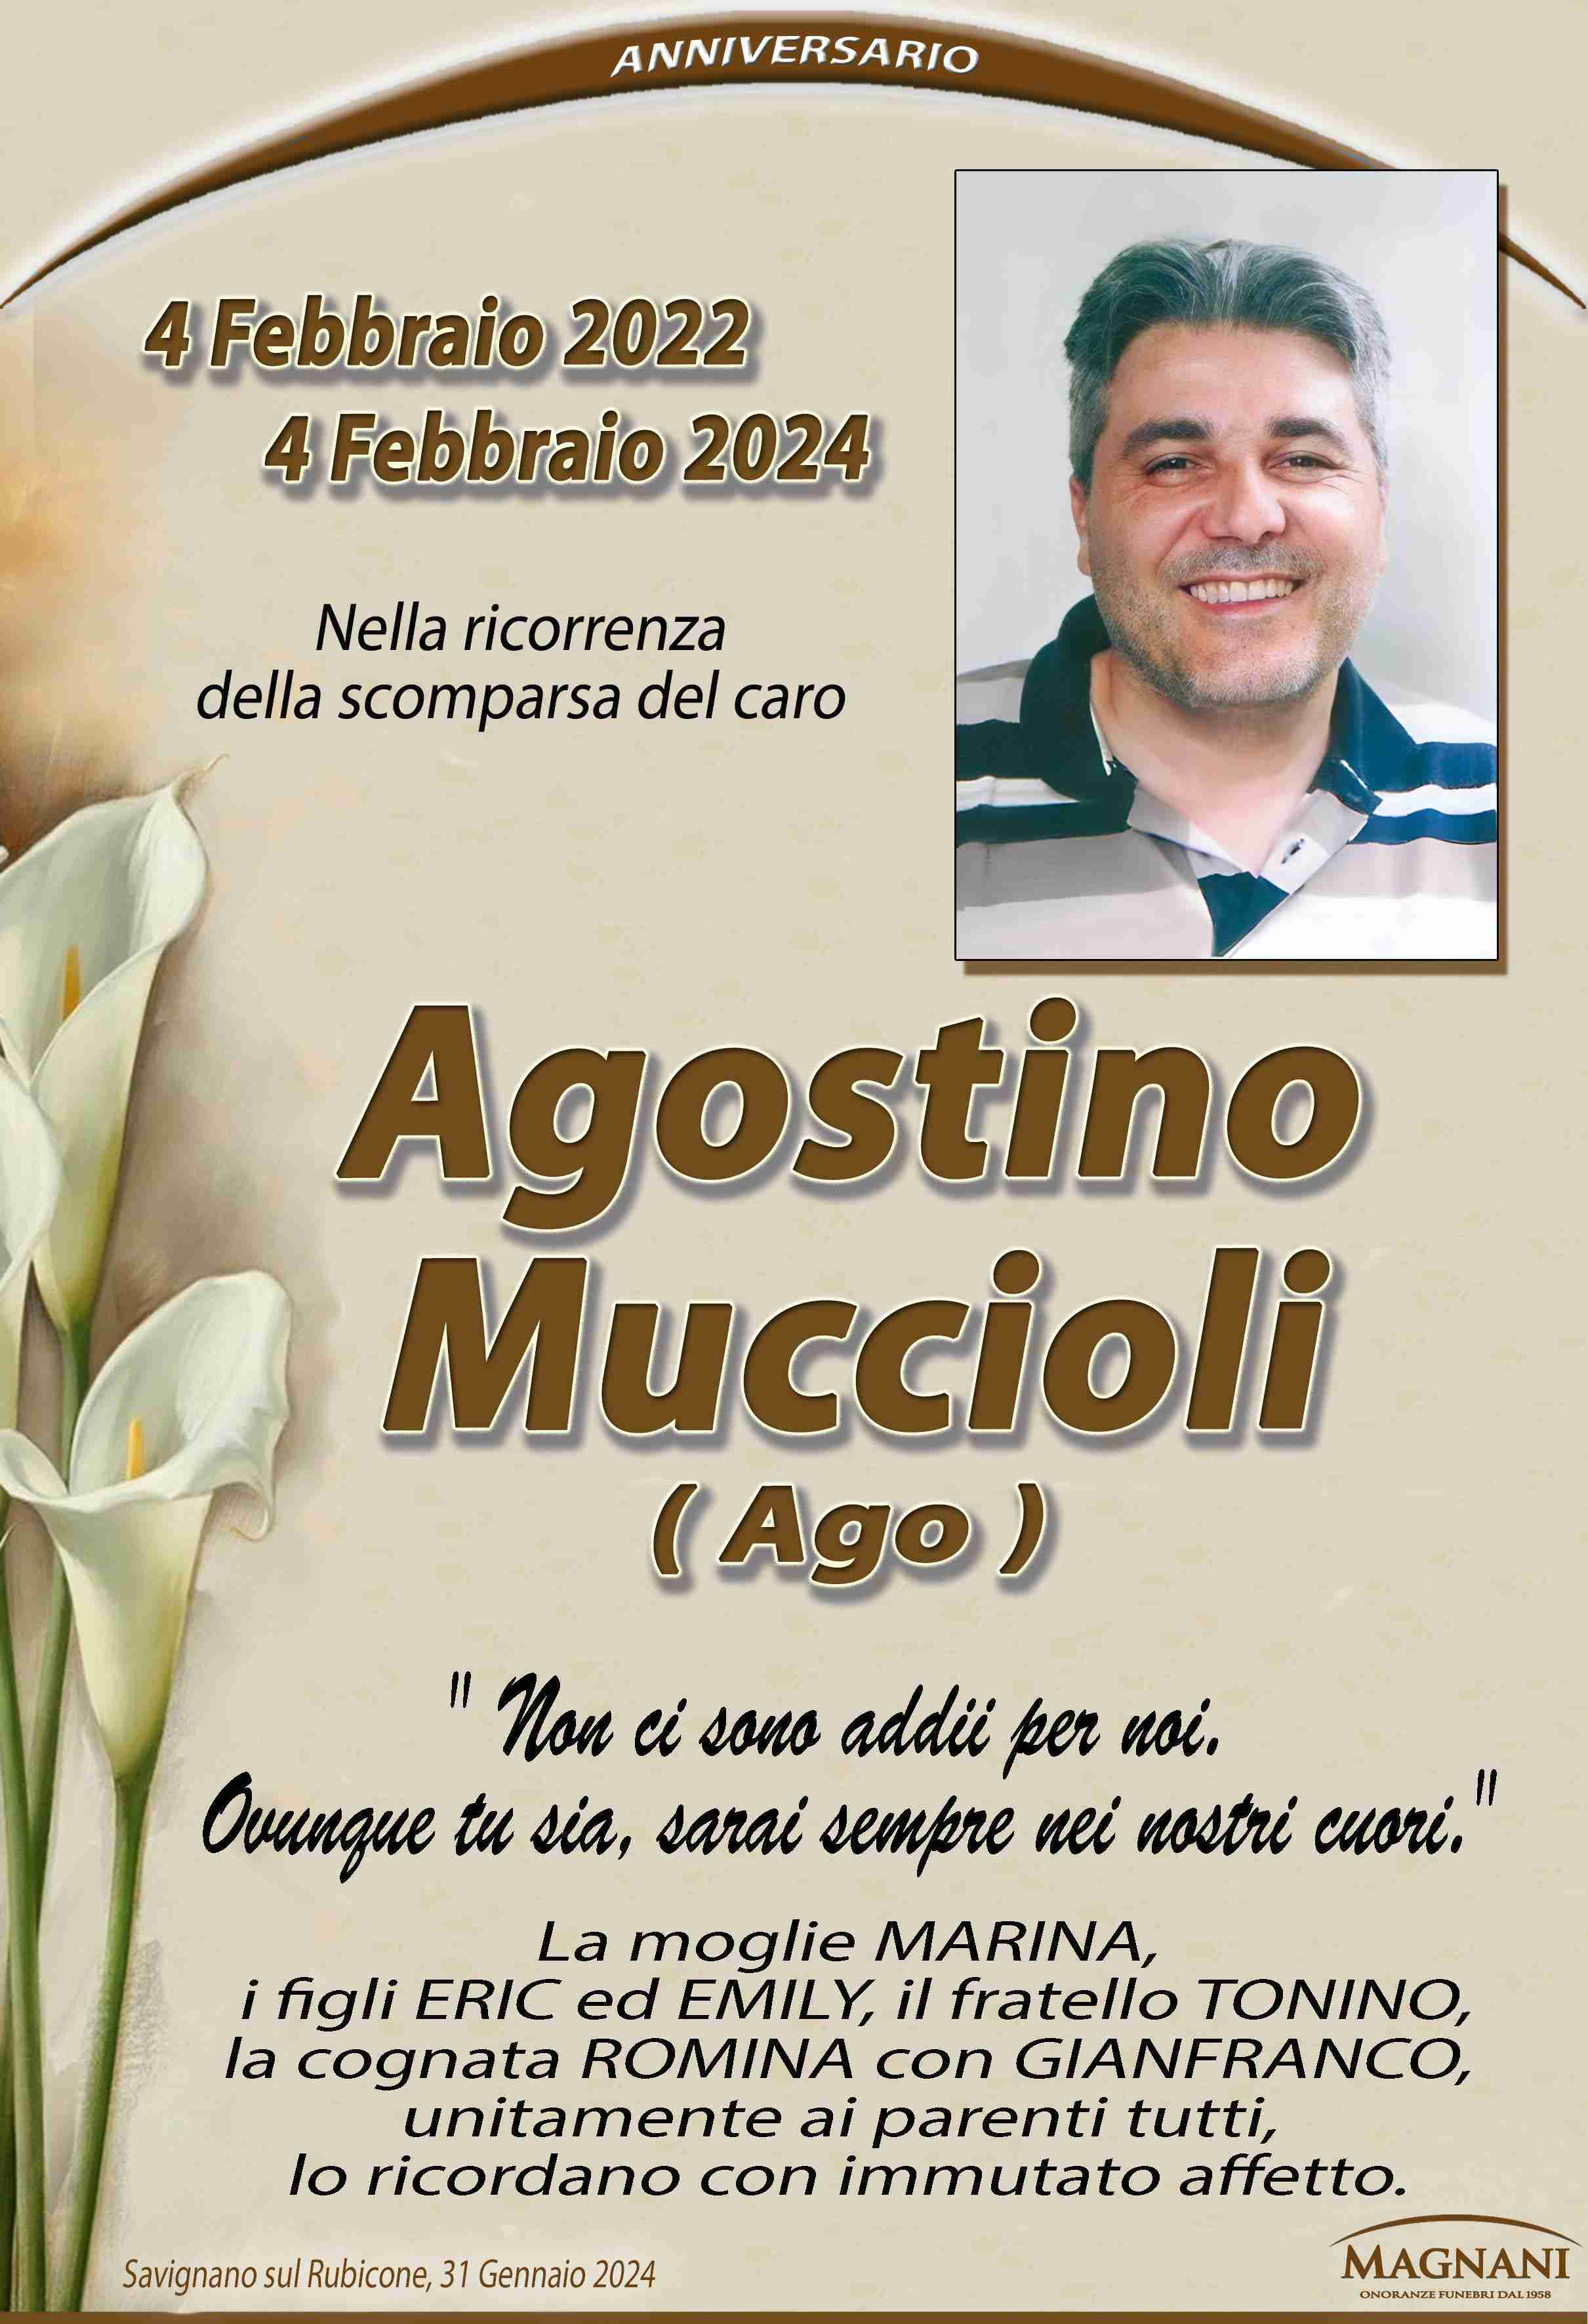 Agostino Muccioli